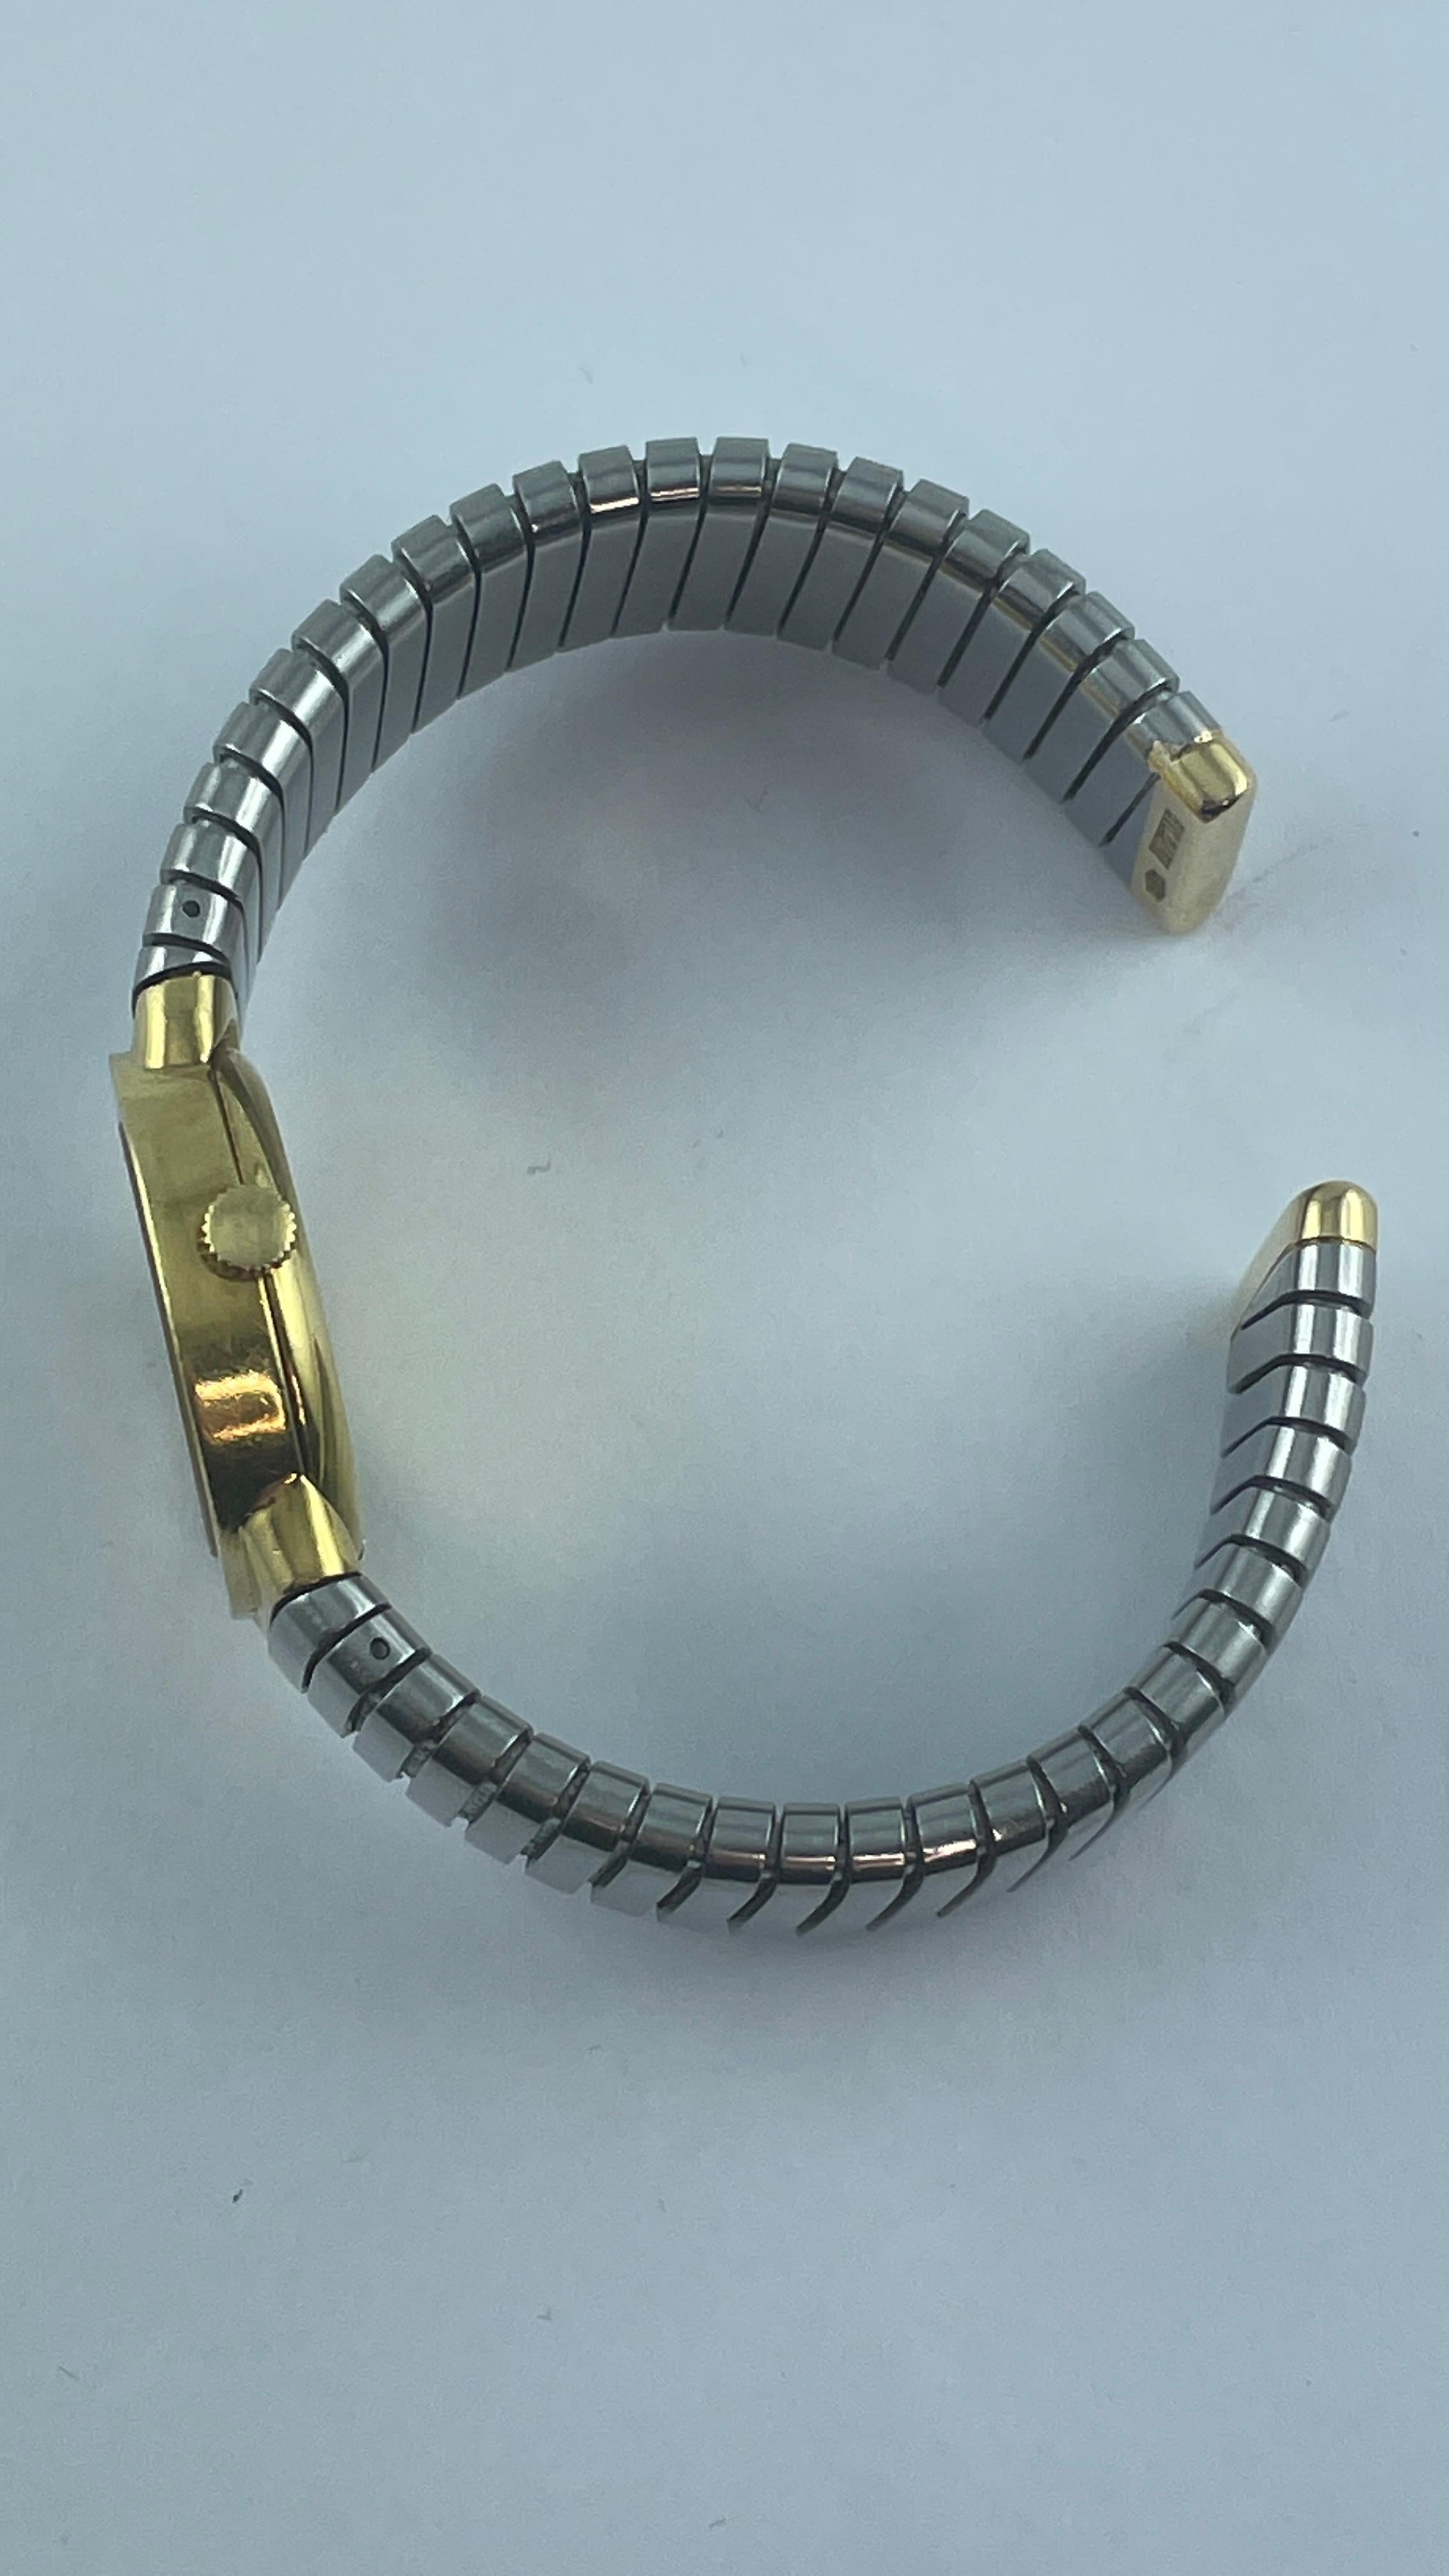 Klassische Tubogas-Armbanduhr aus 18 Karat Gold und Stahl von Bvlgari mit schwarzem Zifferblatt und Handaufzugswerk. 
Das Armband passt für ein Handgelenk von ca. 7'', das Gehäuse hat einen Durchmesser von 23 mm, das Armband ist 15 mm breit. 